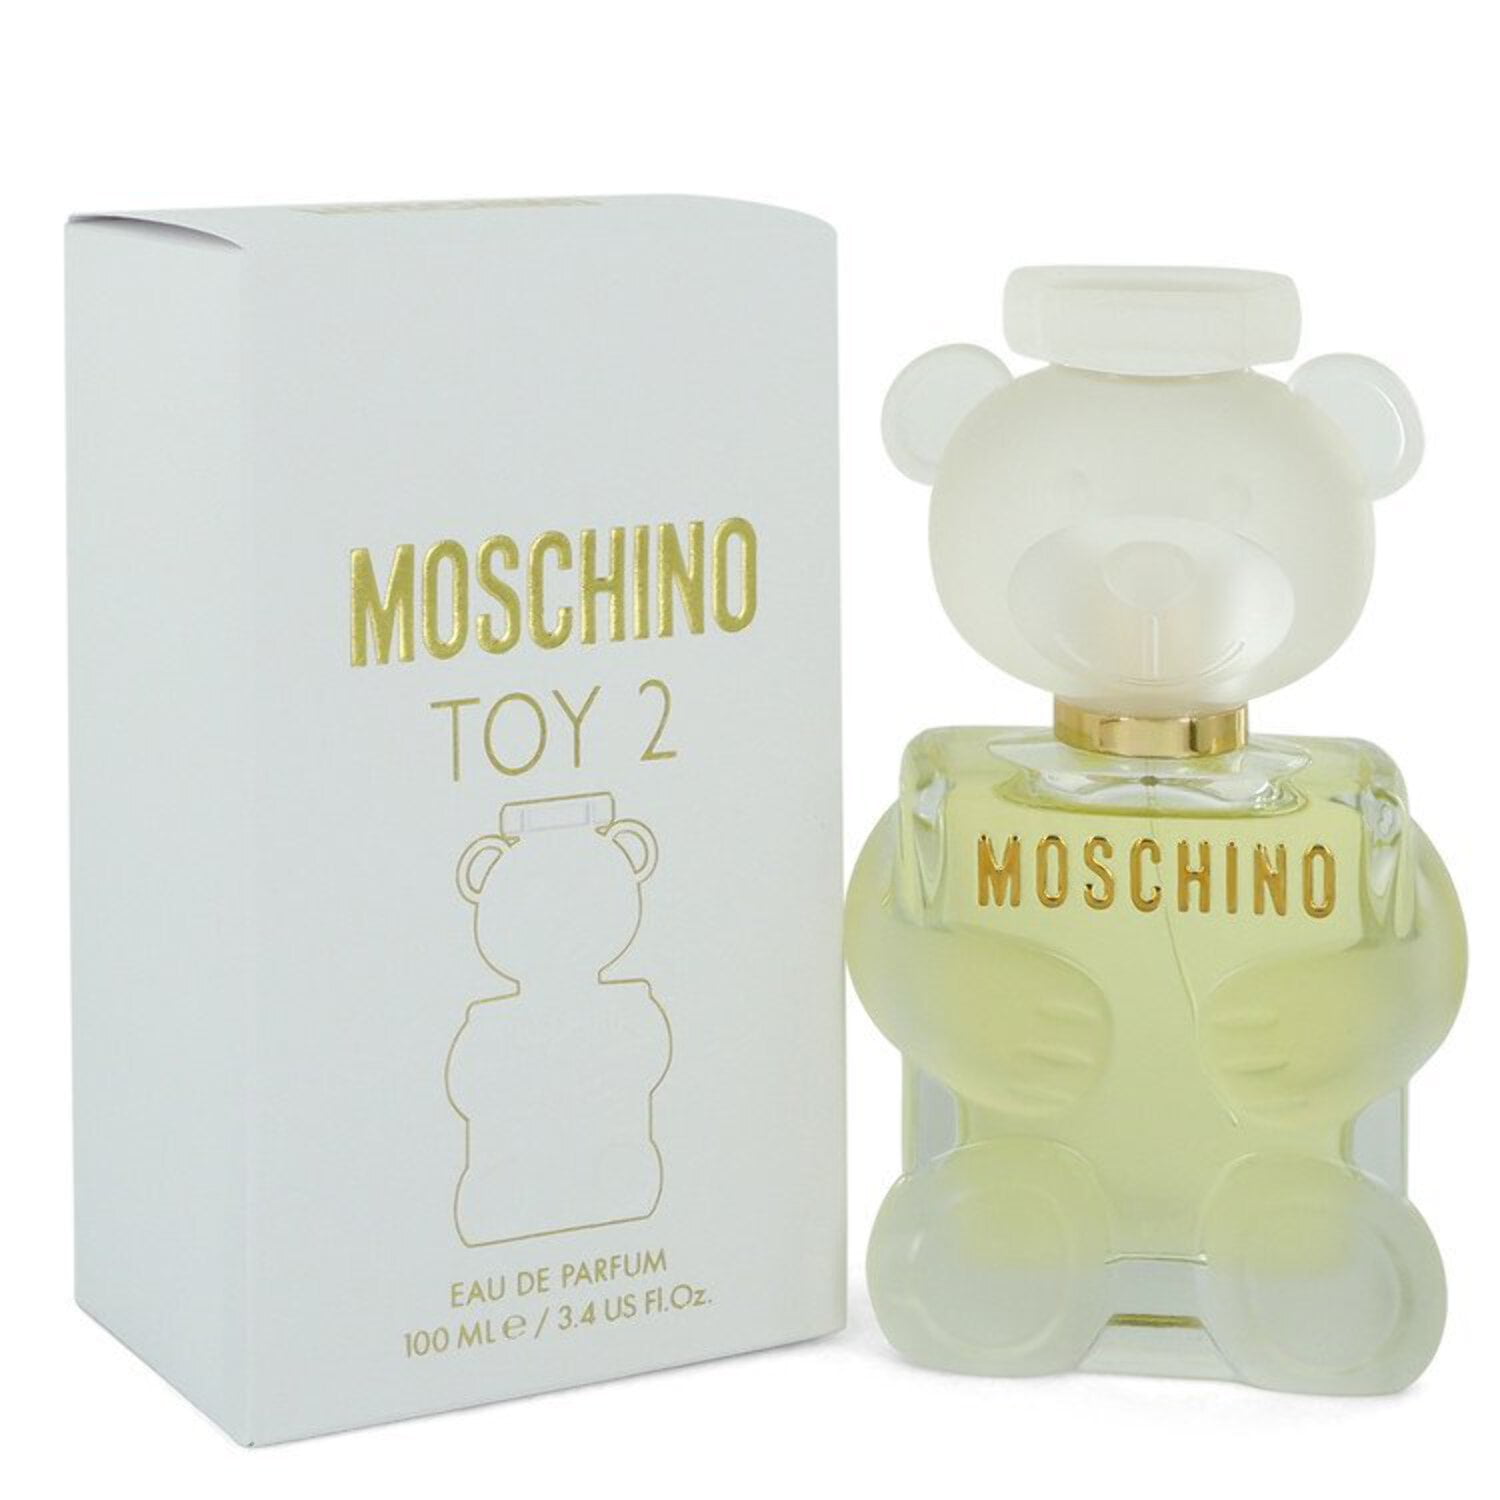 Moschino Toy 2 Eau de Parfum, Perfume for Women, 3.4 Oz - Walmart.com